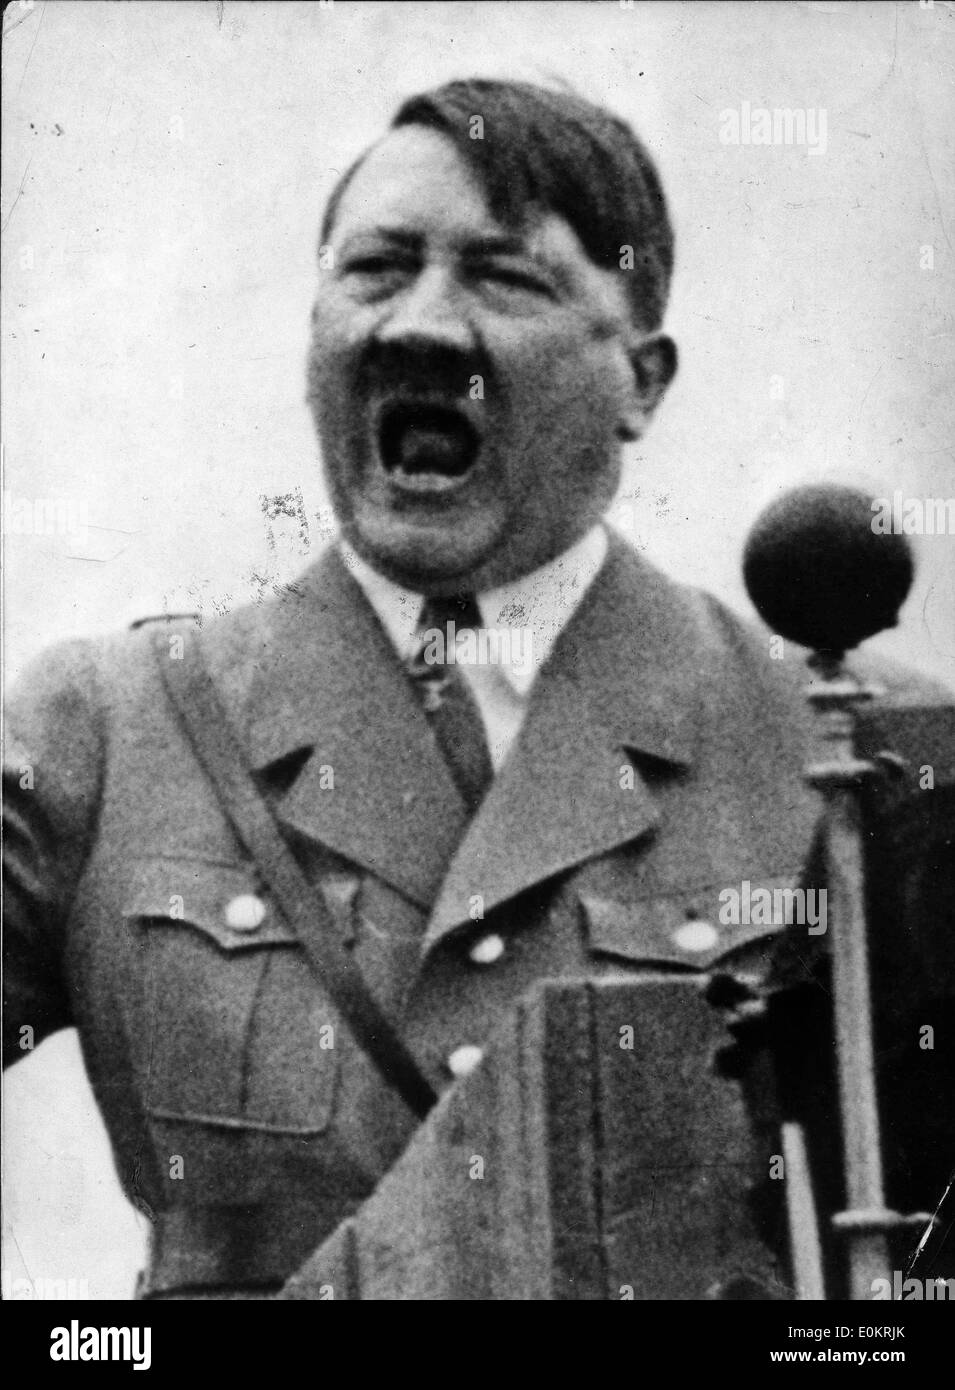 The Big Lie Is A Big Deal Adolf-hitler-giving-a-powerful-speech-E0KRJK